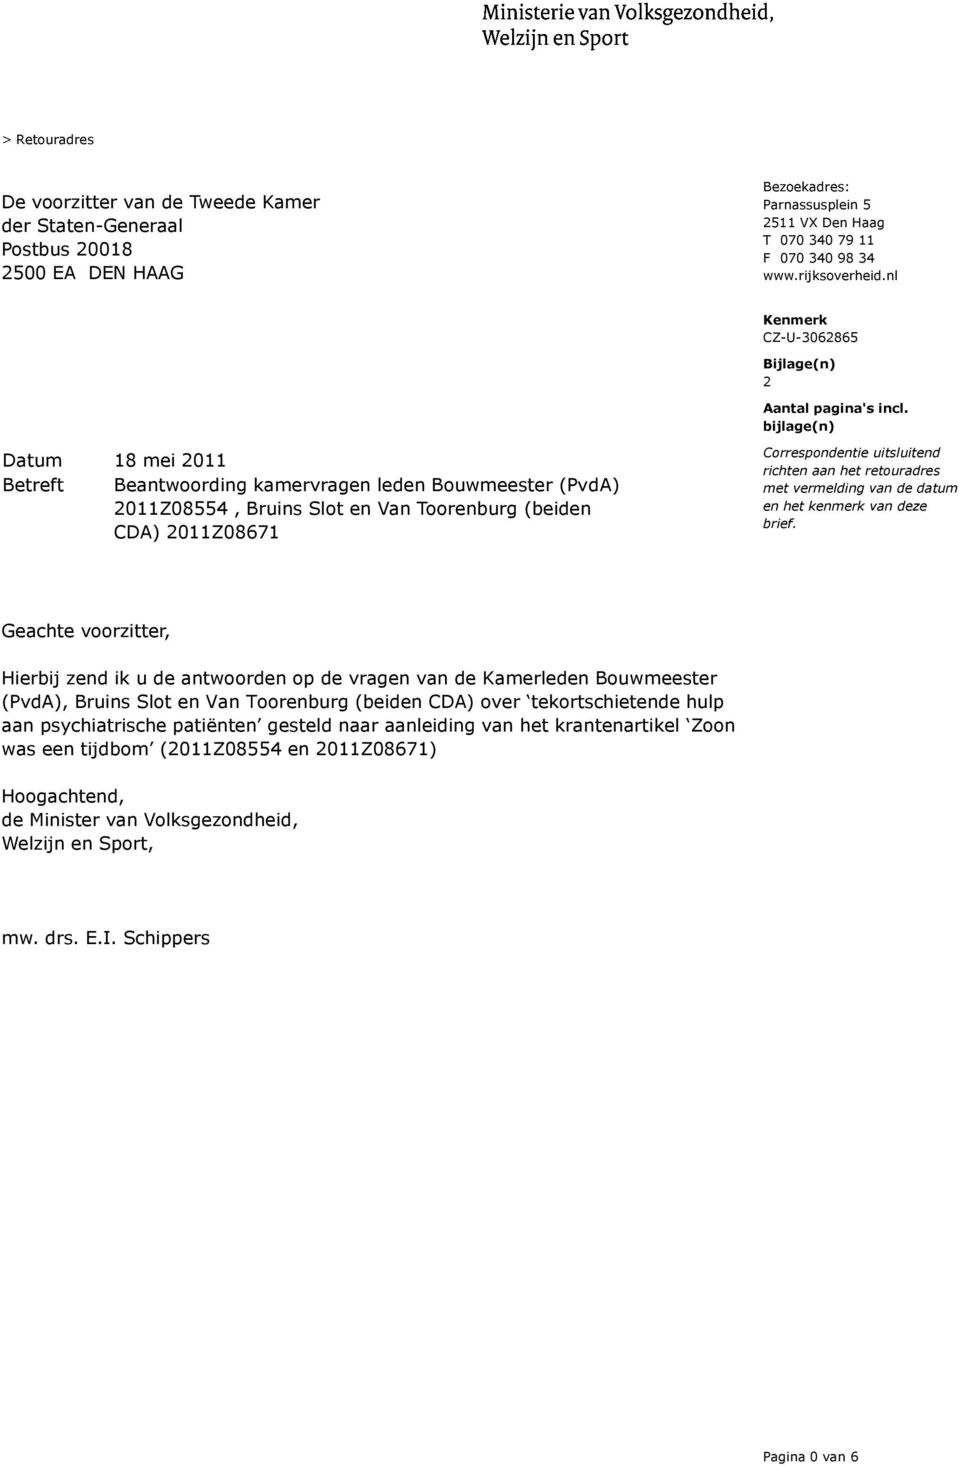 bijlage(n) Datum 18 mei 2011 Betreft Beantwoording kamervragen leden Bouwmeester (PvdA) 2011Z08554, Bruins Slot en Van Toorenburg (beiden CDA) 2011Z08671 Correspondentie uitsluitend richten aan het